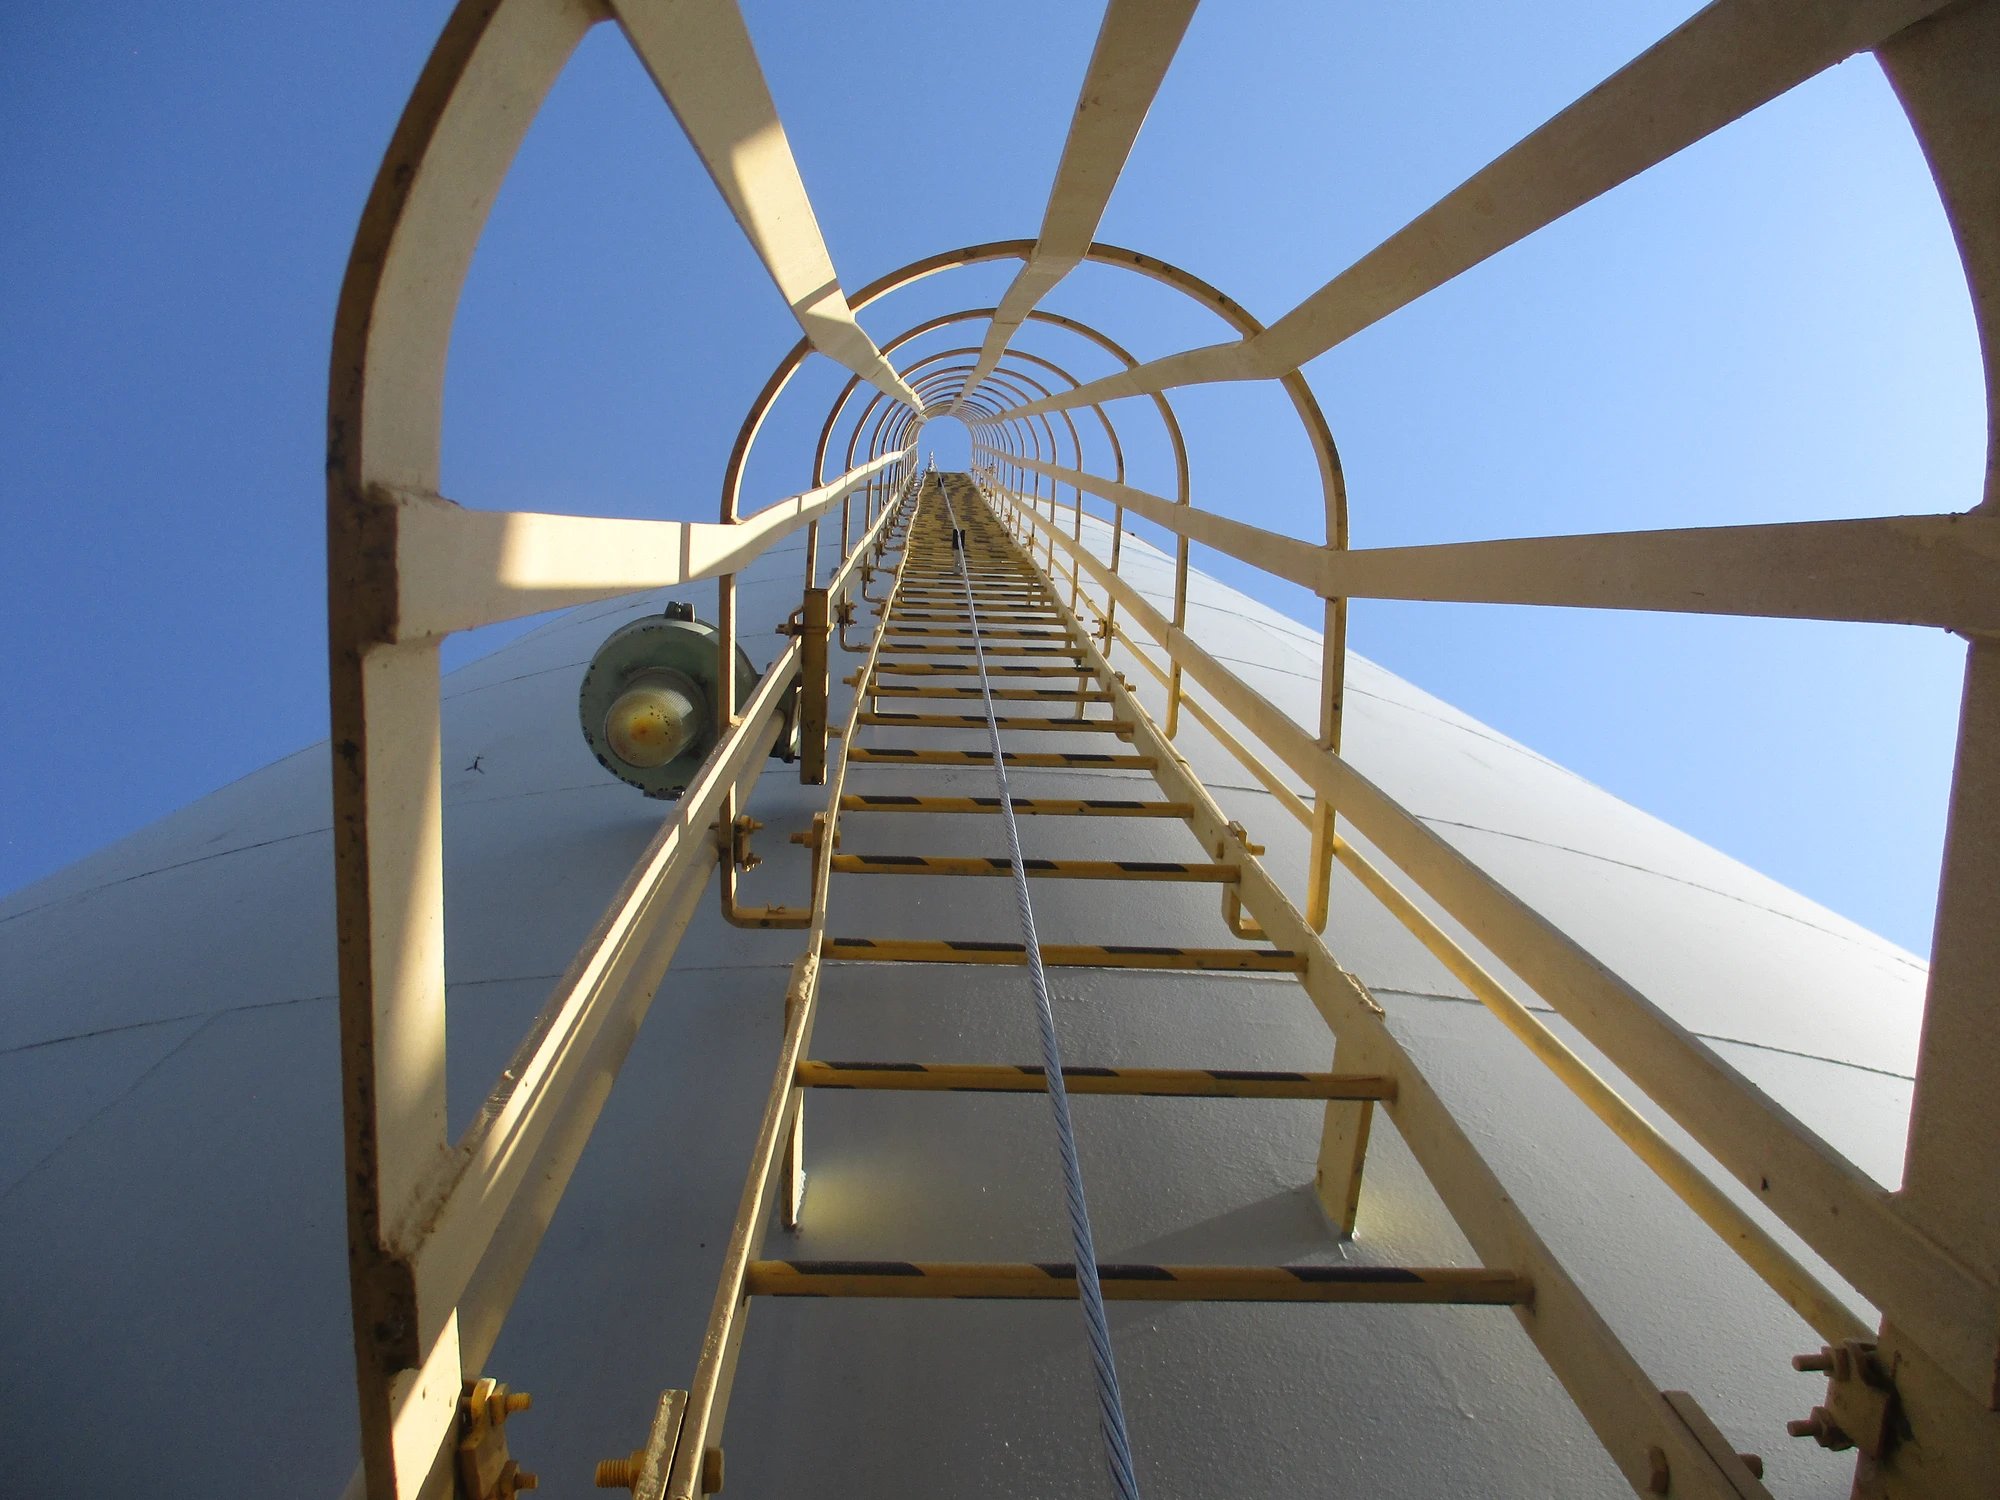 vertical lifeline ladder system